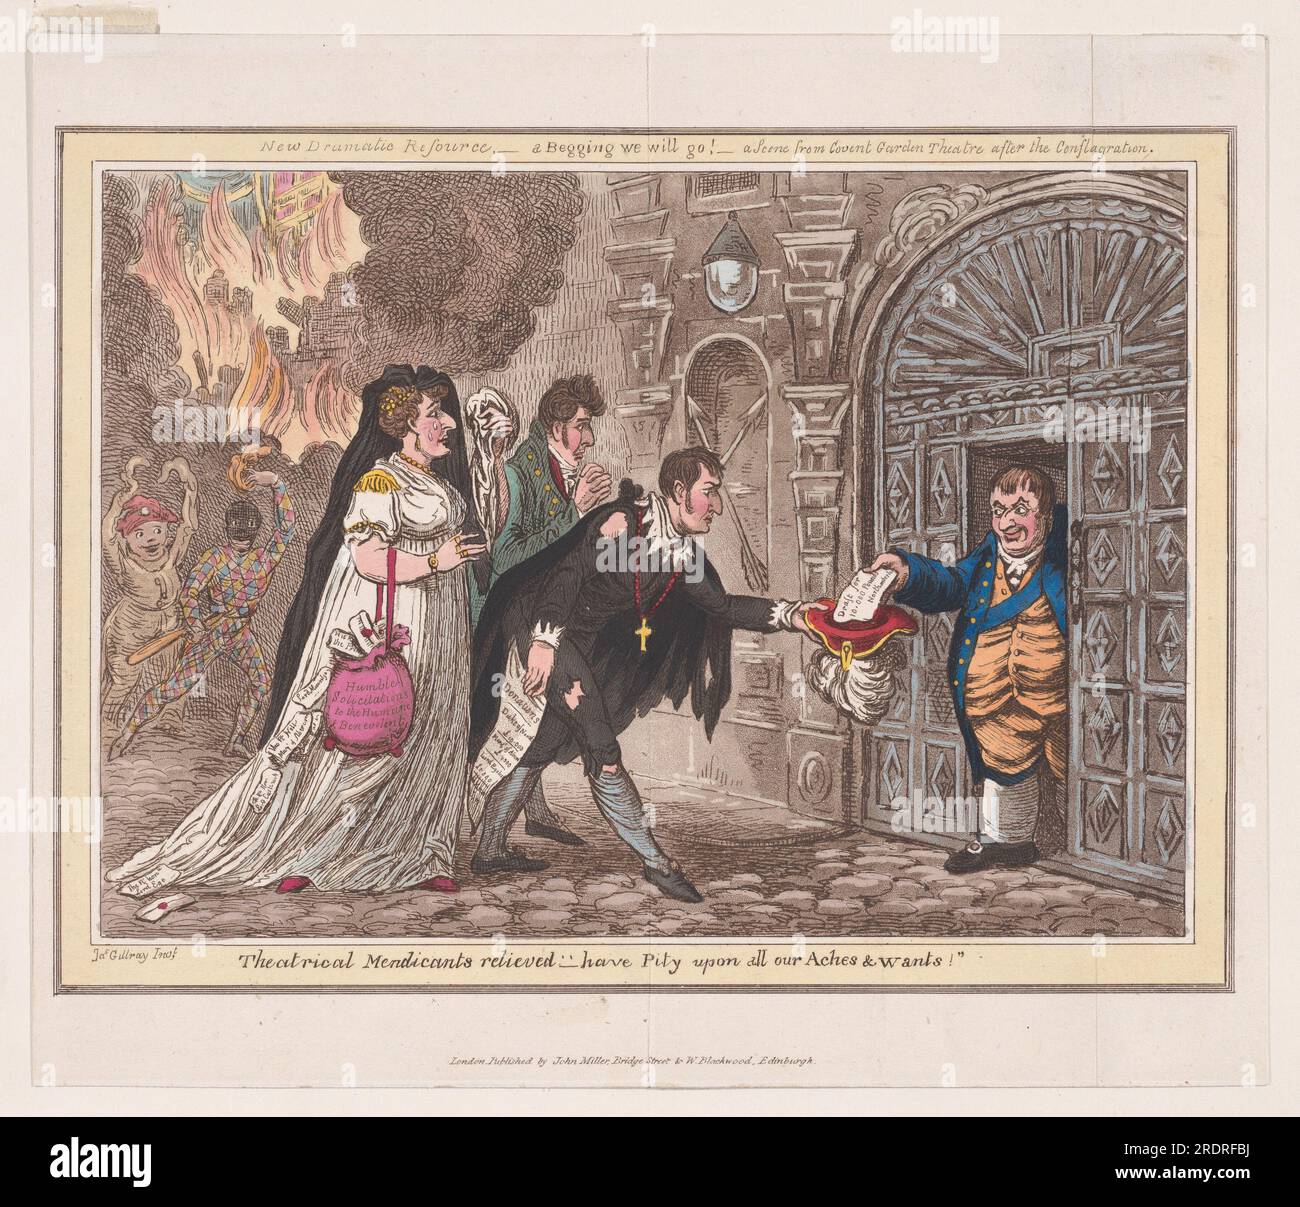 Mendicants teatrali sollevati - Abbi pietà di tutti i nostri dolori e desideri! 15 gennaio 1809 di James Gillray Foto Stock